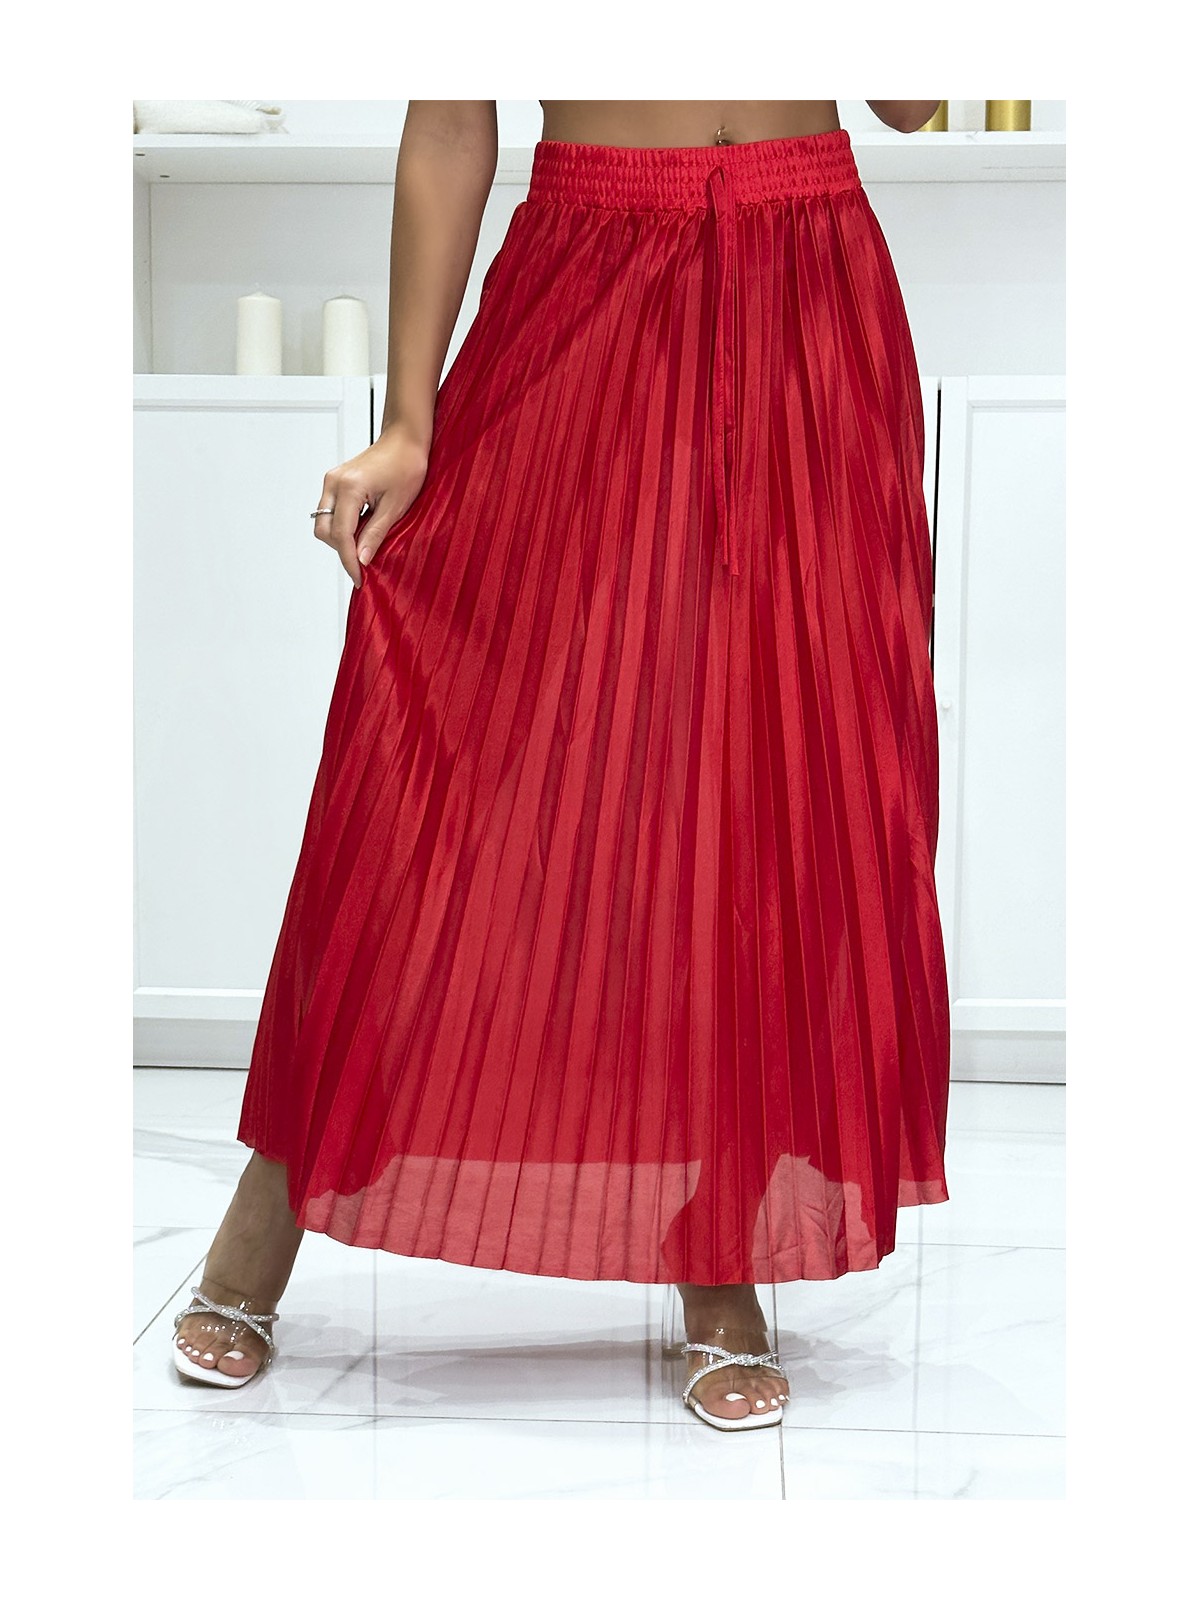 Longue jupe plissé satiné rouge très chic - 2